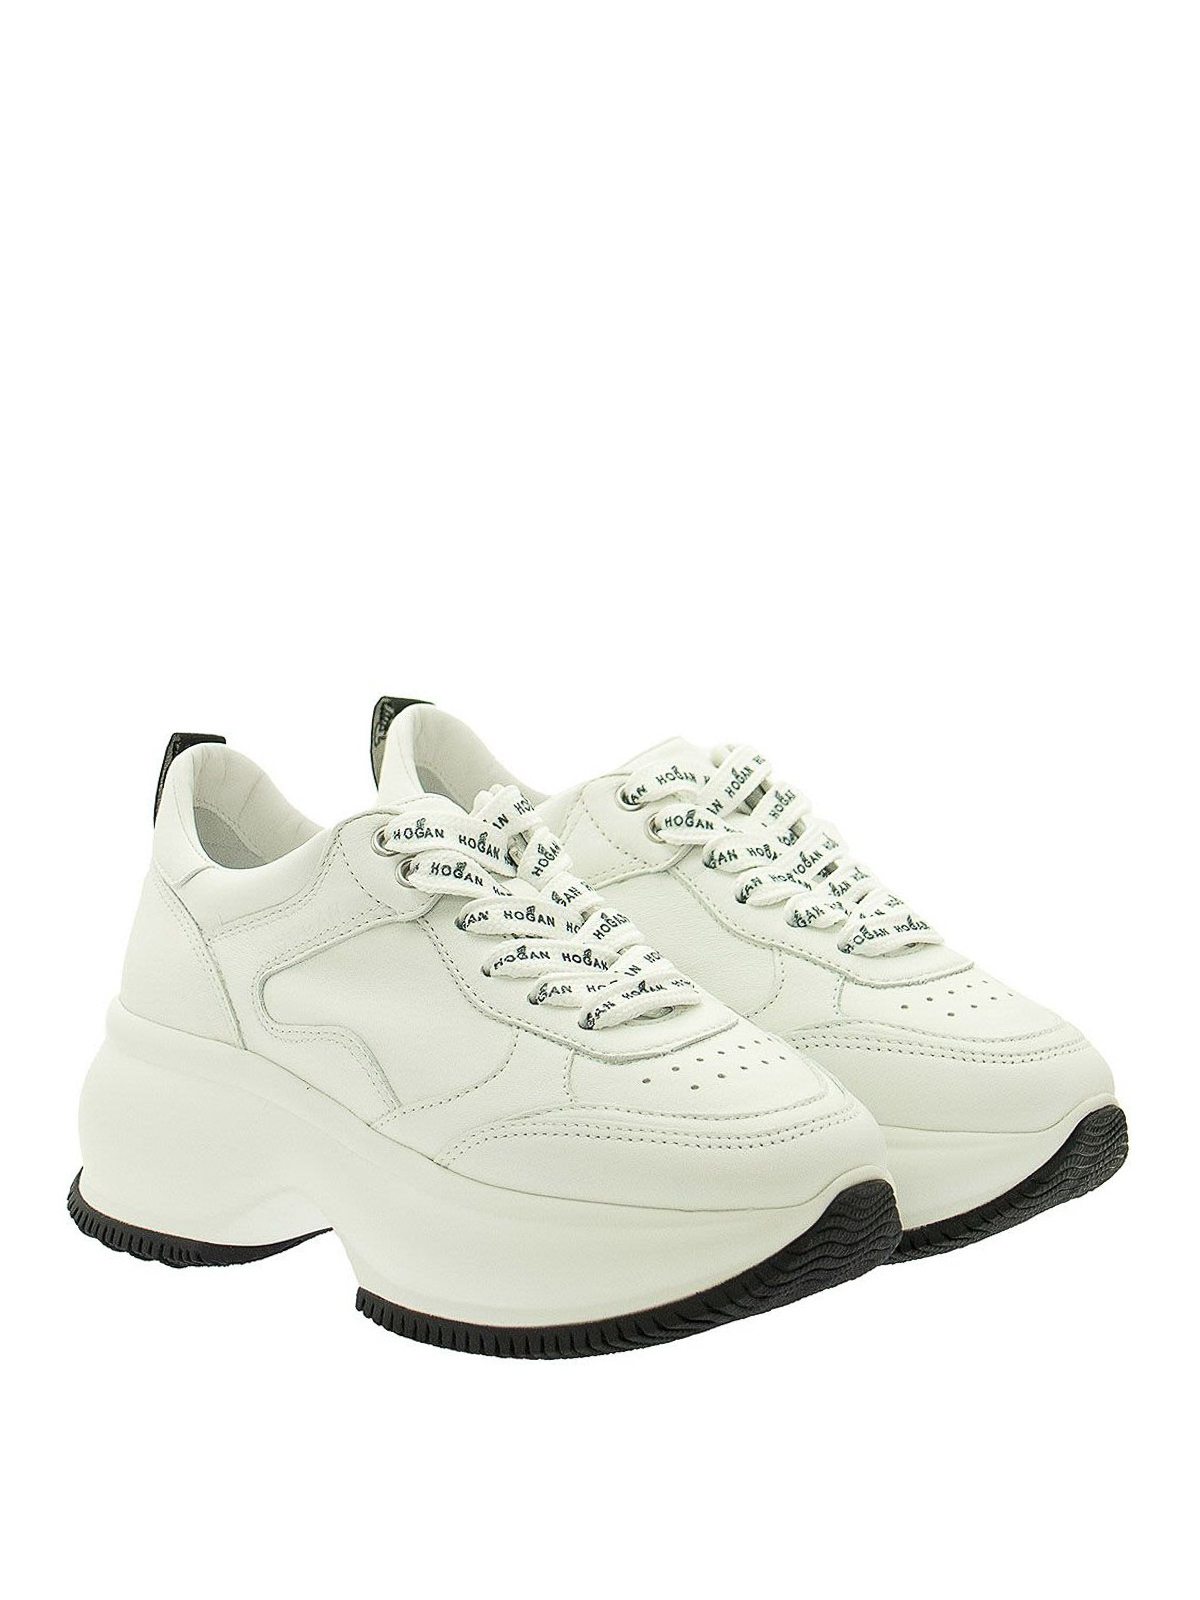 Trainers Hogan - Maxi I Active sneakers - HXW4350BN50LE9B001 | iKRIX.com